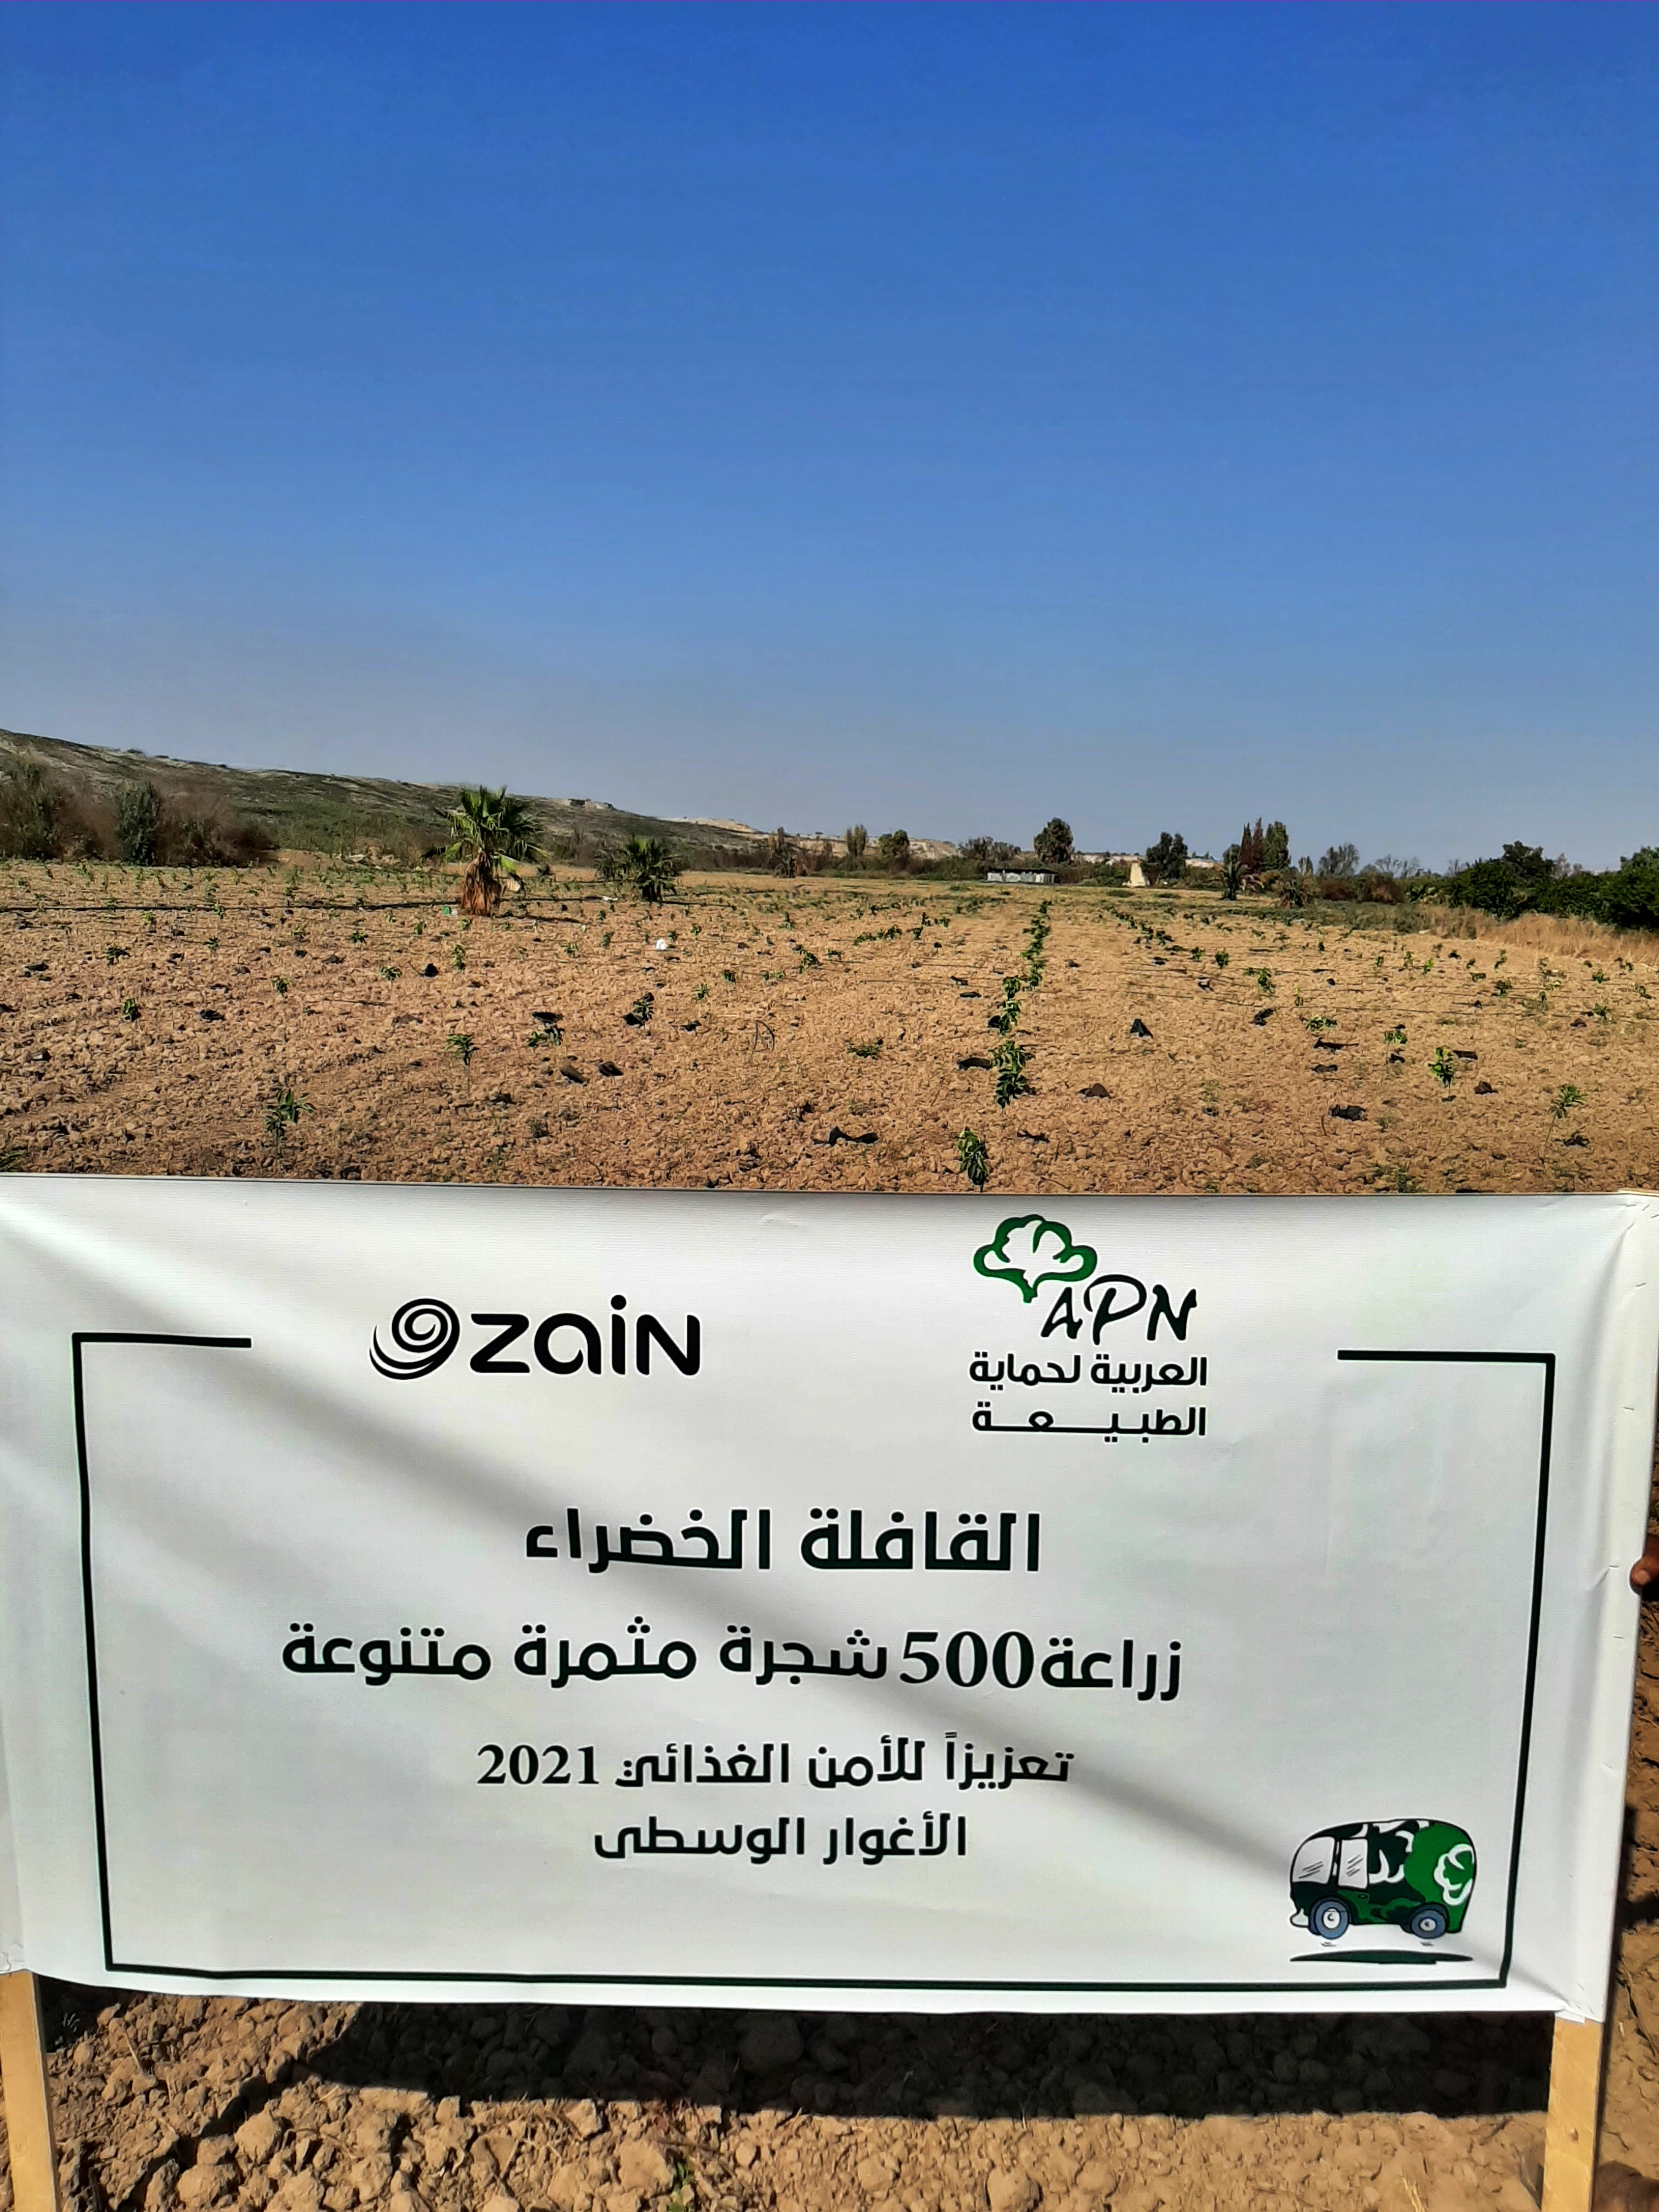 زين تدعم مزارعي الأردن بـ 4050 شجرة مثمرة وتواصل رعاية 7500 شجرة في غابتها